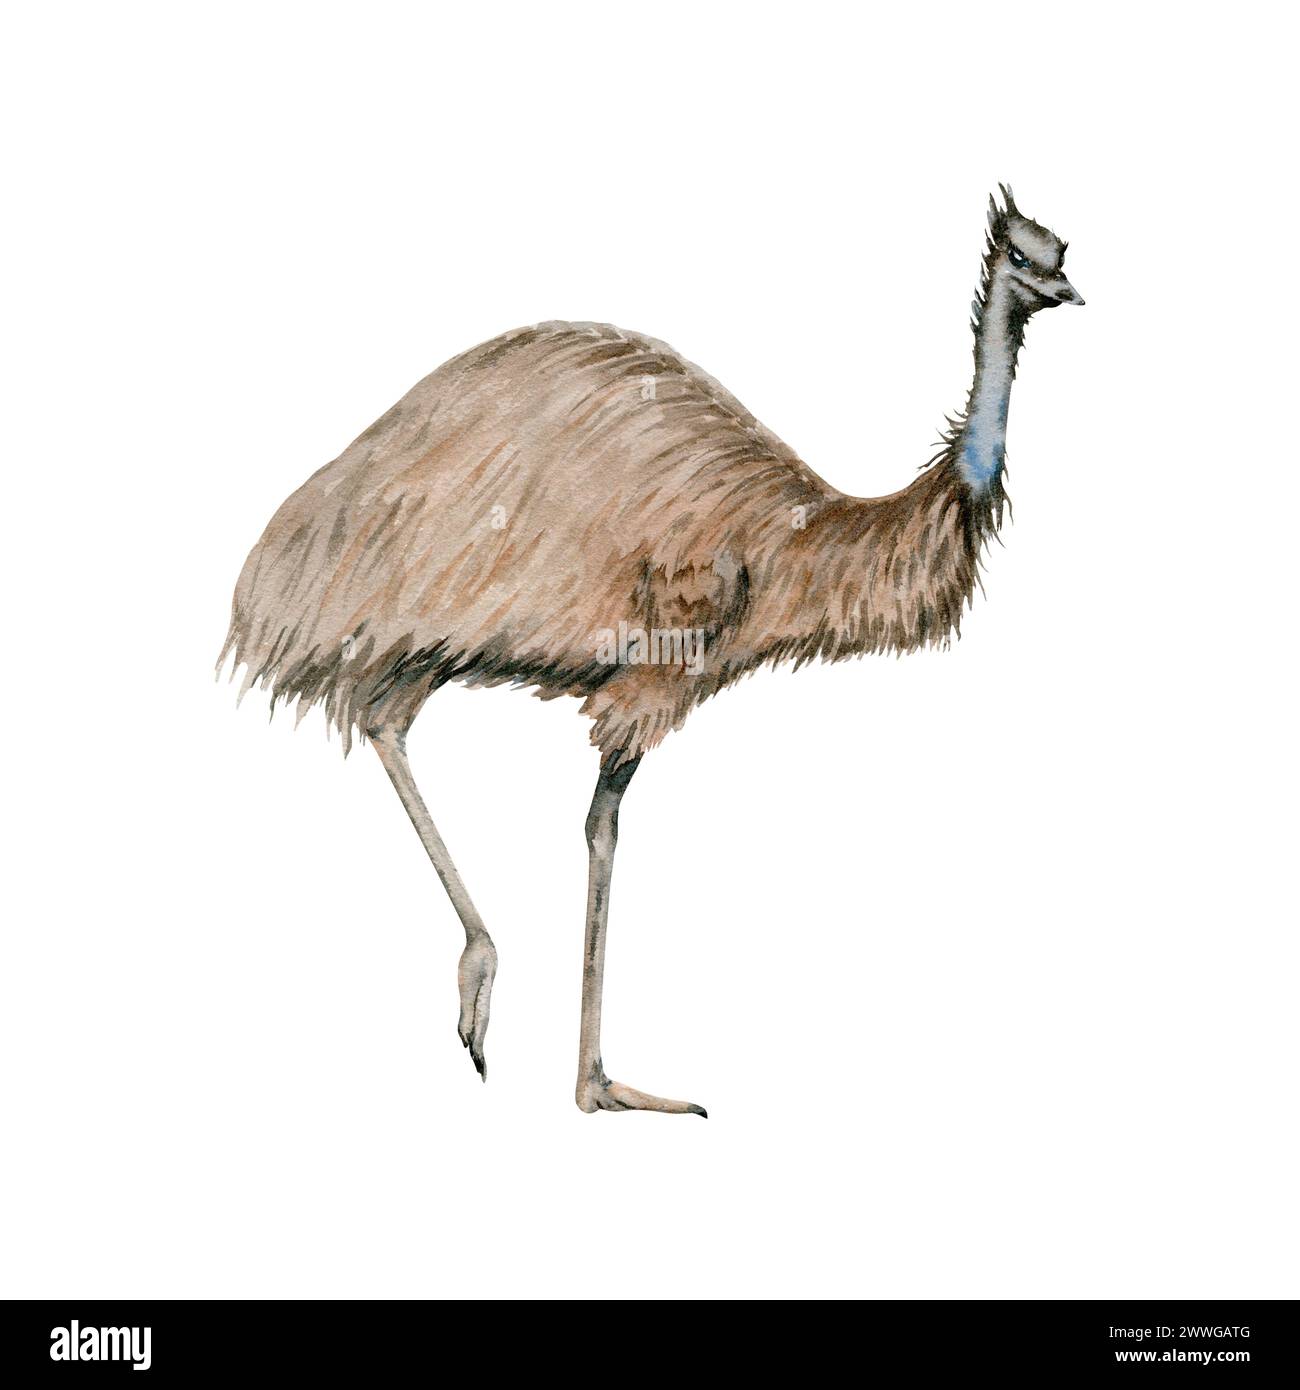 Autruche émeu. Animal nocturne marsupial indigène australien. Illustration aquarelle isolée sur fond blanc. Croquis national d'oiseaux dessiné à la main Banque D'Images